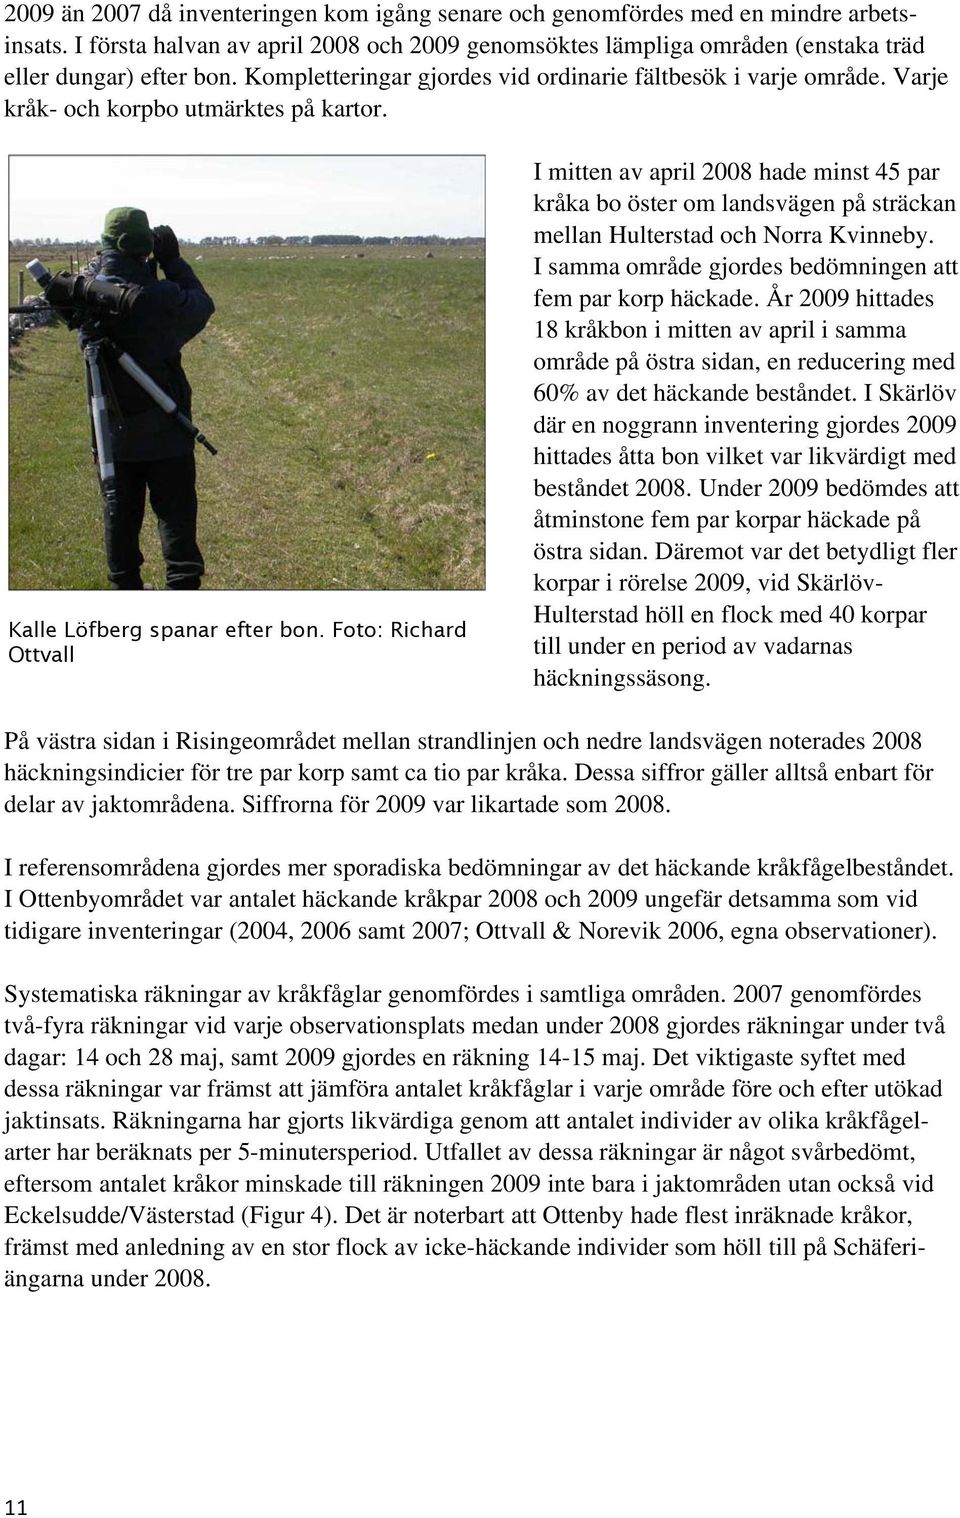 Foto: Richard Ottvall I mitten av april 2008 hade minst 45 par kråka bo öster om landsvägen på sträckan mellan Hulterstad och Norra Kvinneby.